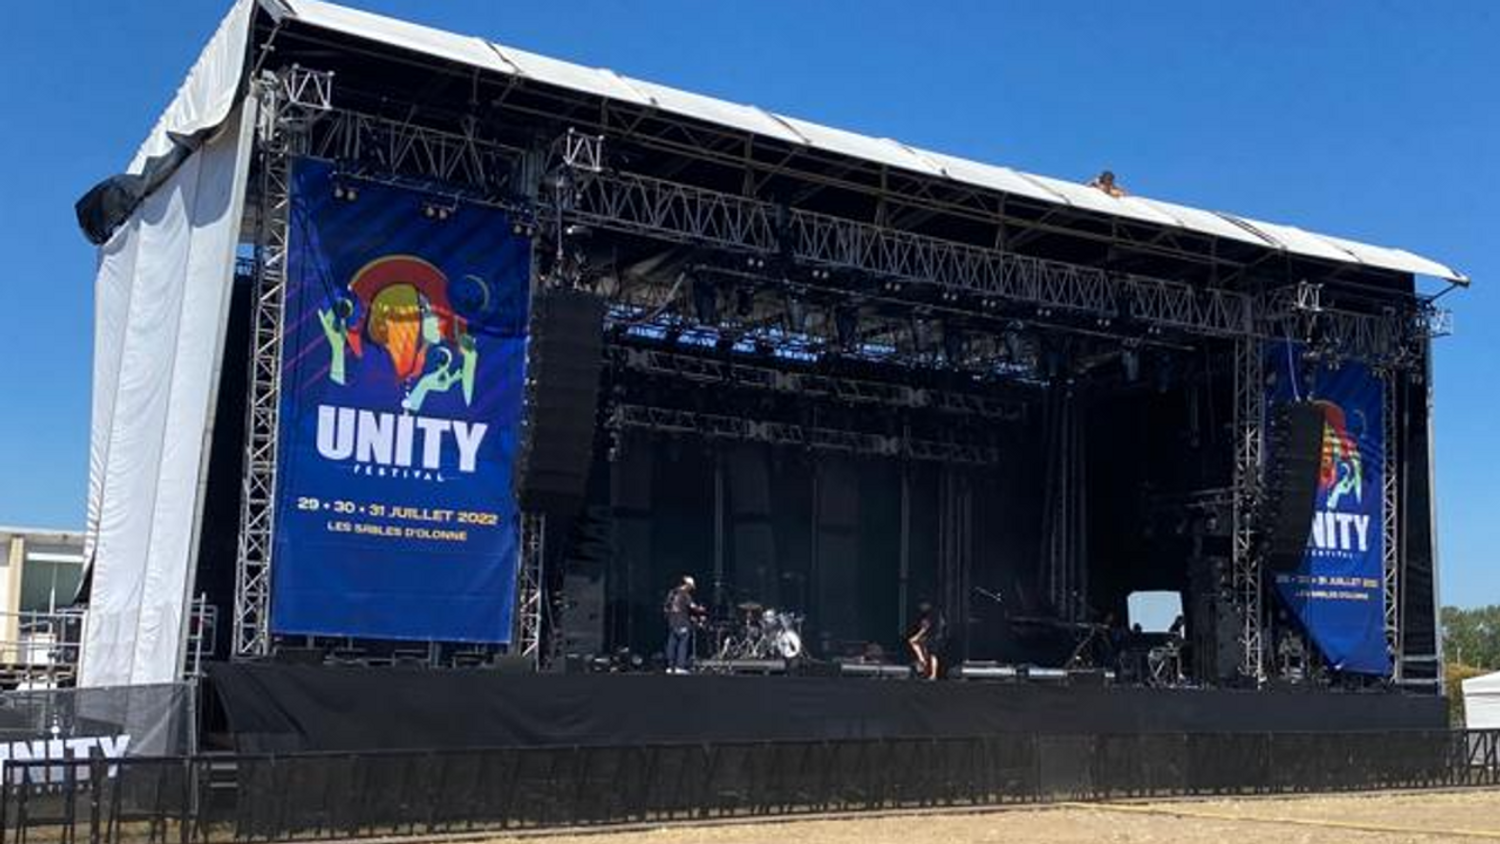 Revivez le lancement de la première édition du Unity Festival 